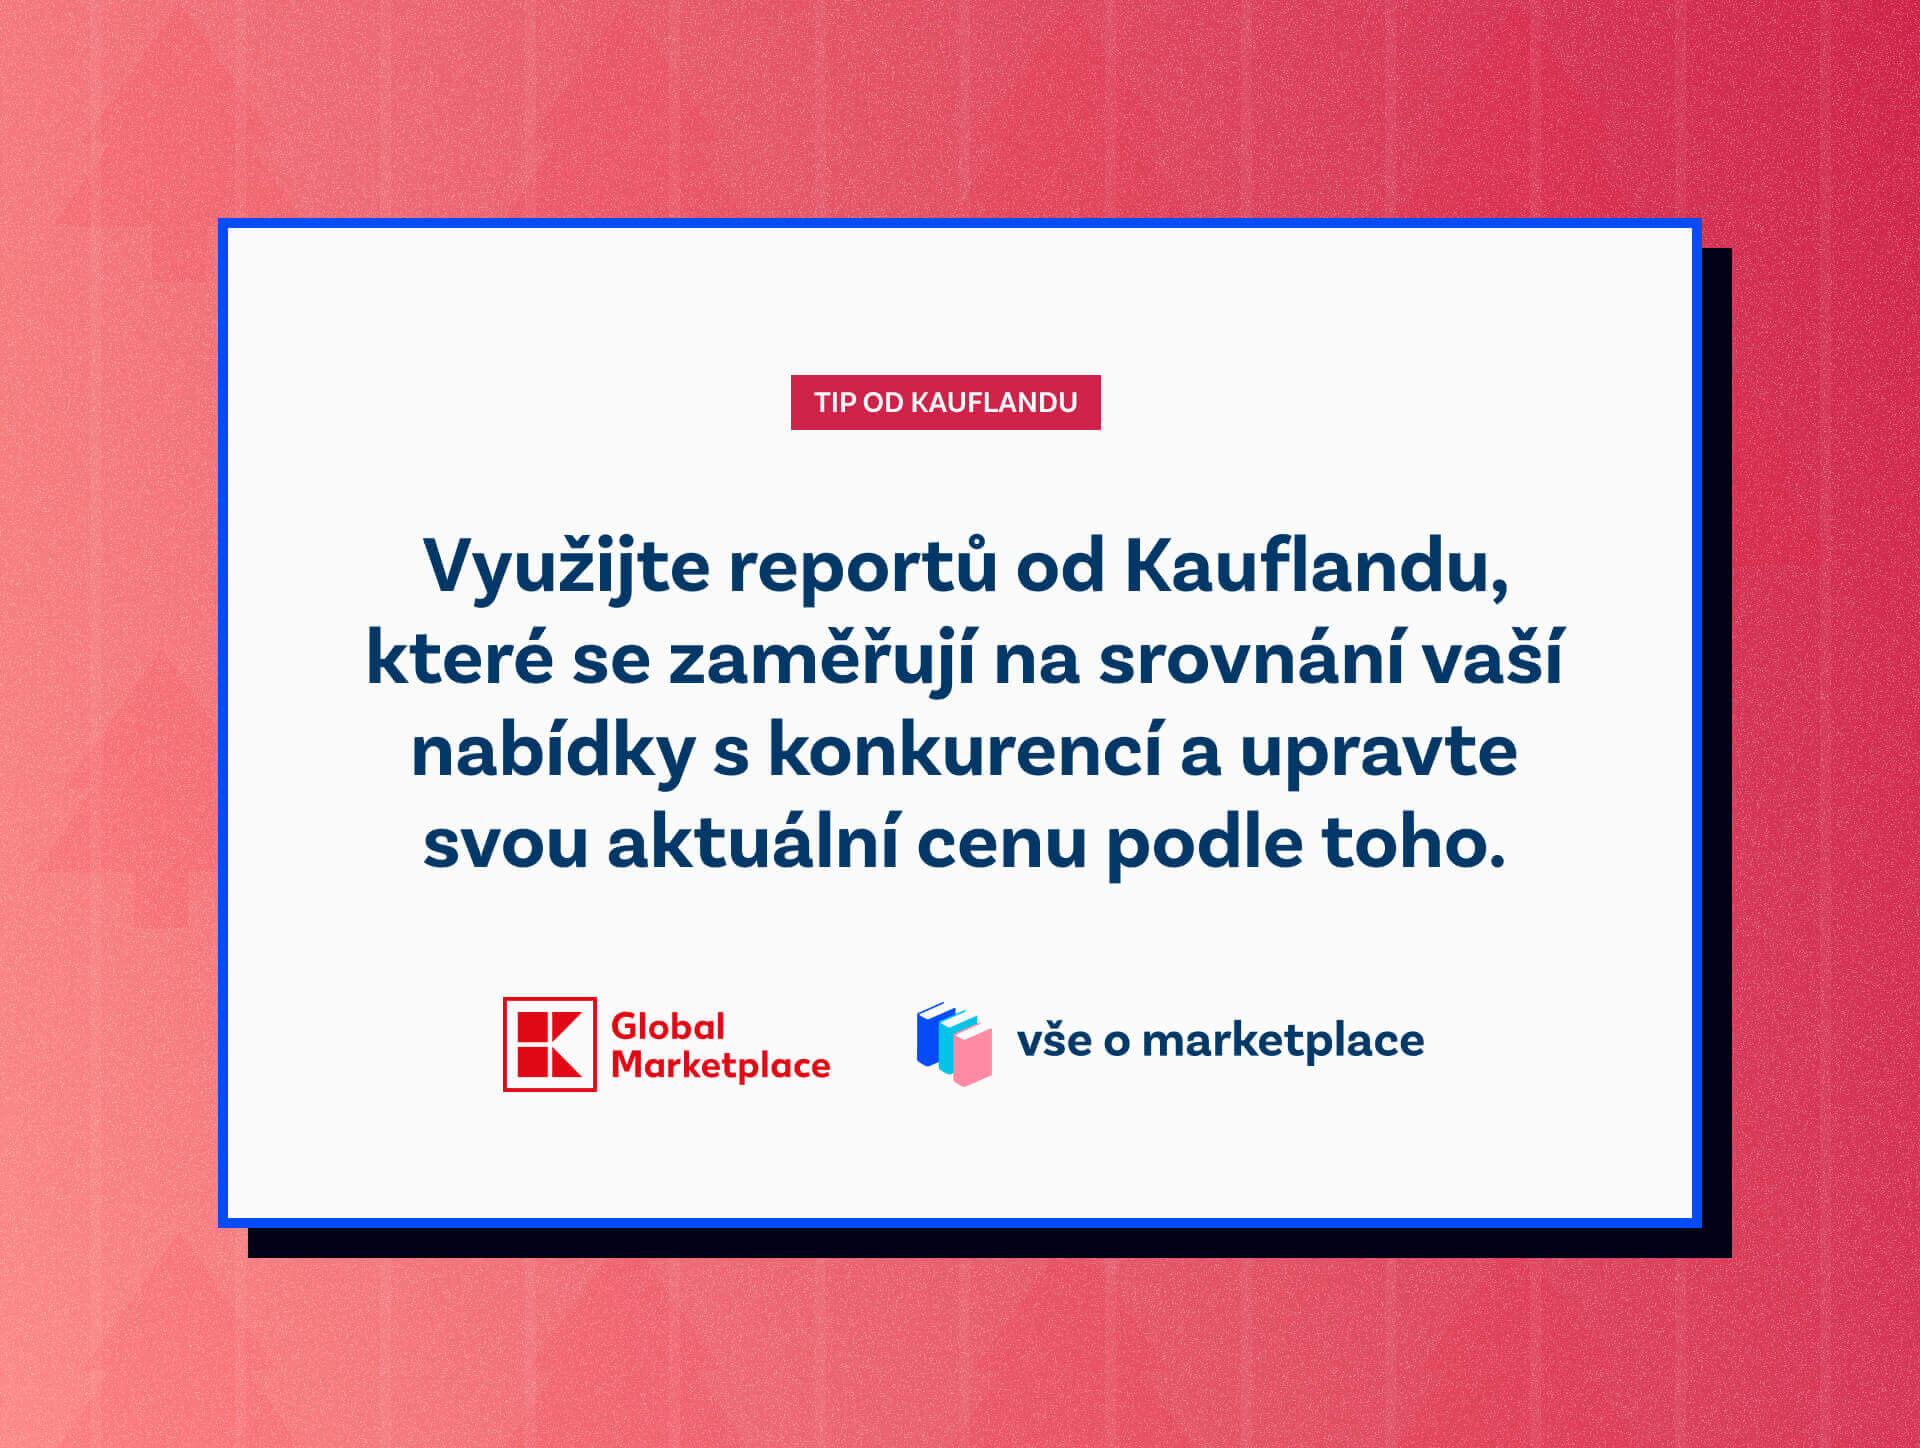 Tip od Kauflandu: Využijte reportů od Kauflandu, které se zaměřují na srovnání vaší nabídky s konkurencí a upravte svou aktuální cenu podle toho.

Vše o marketplace